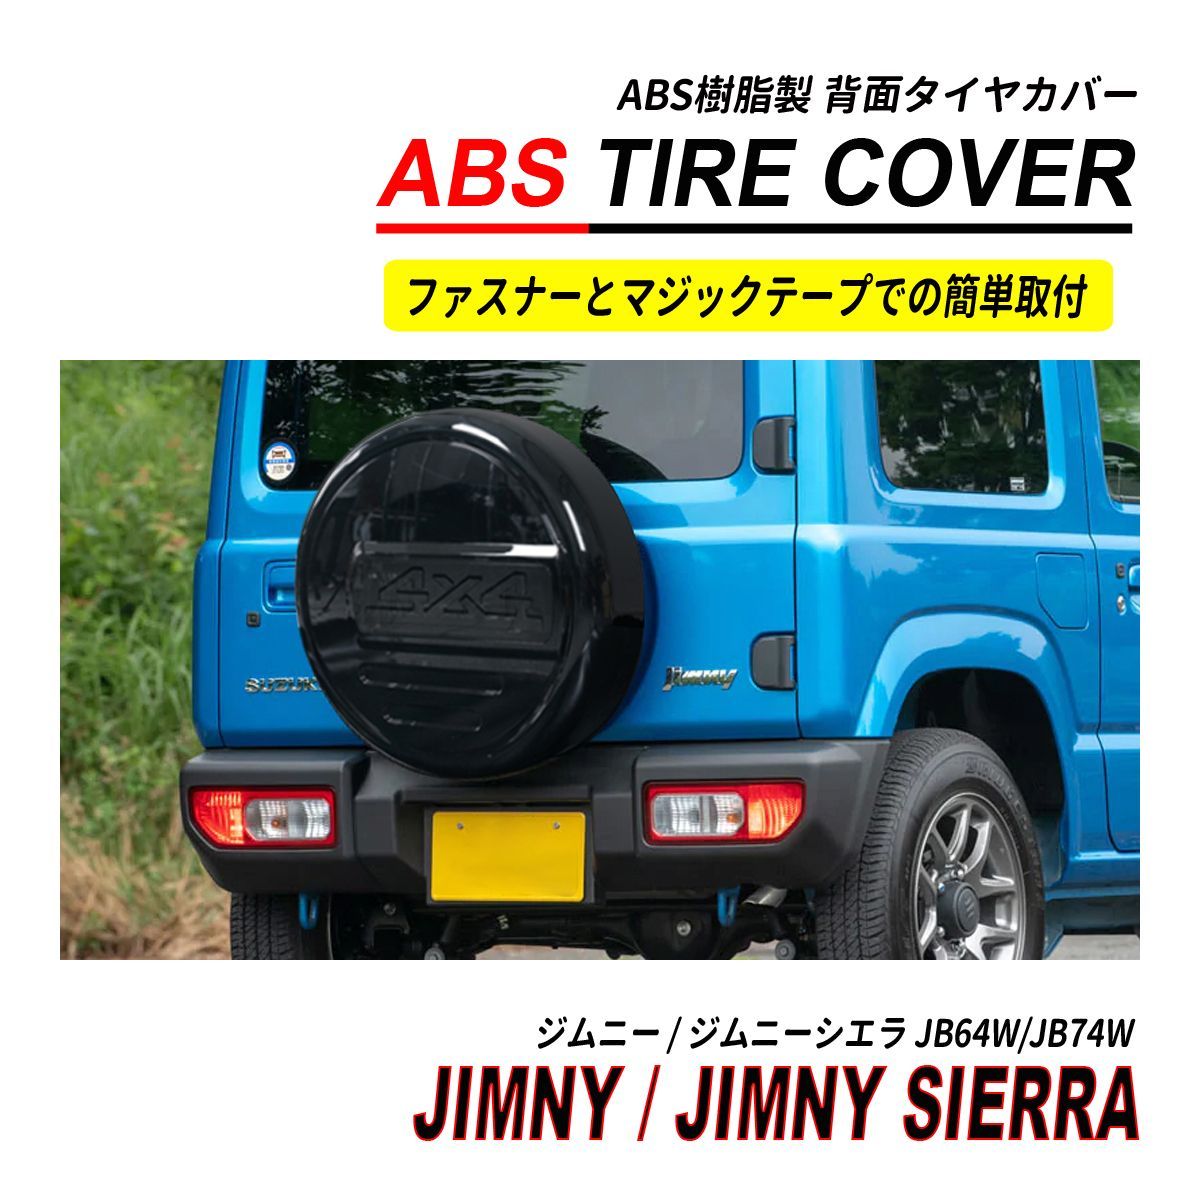 印象のデザイン 新品 日本未発売 スペアタイヤカバー スズキ SUZUKI ジムニー 汎用R15-R18 すべてに適しています自動車 簡単取付 